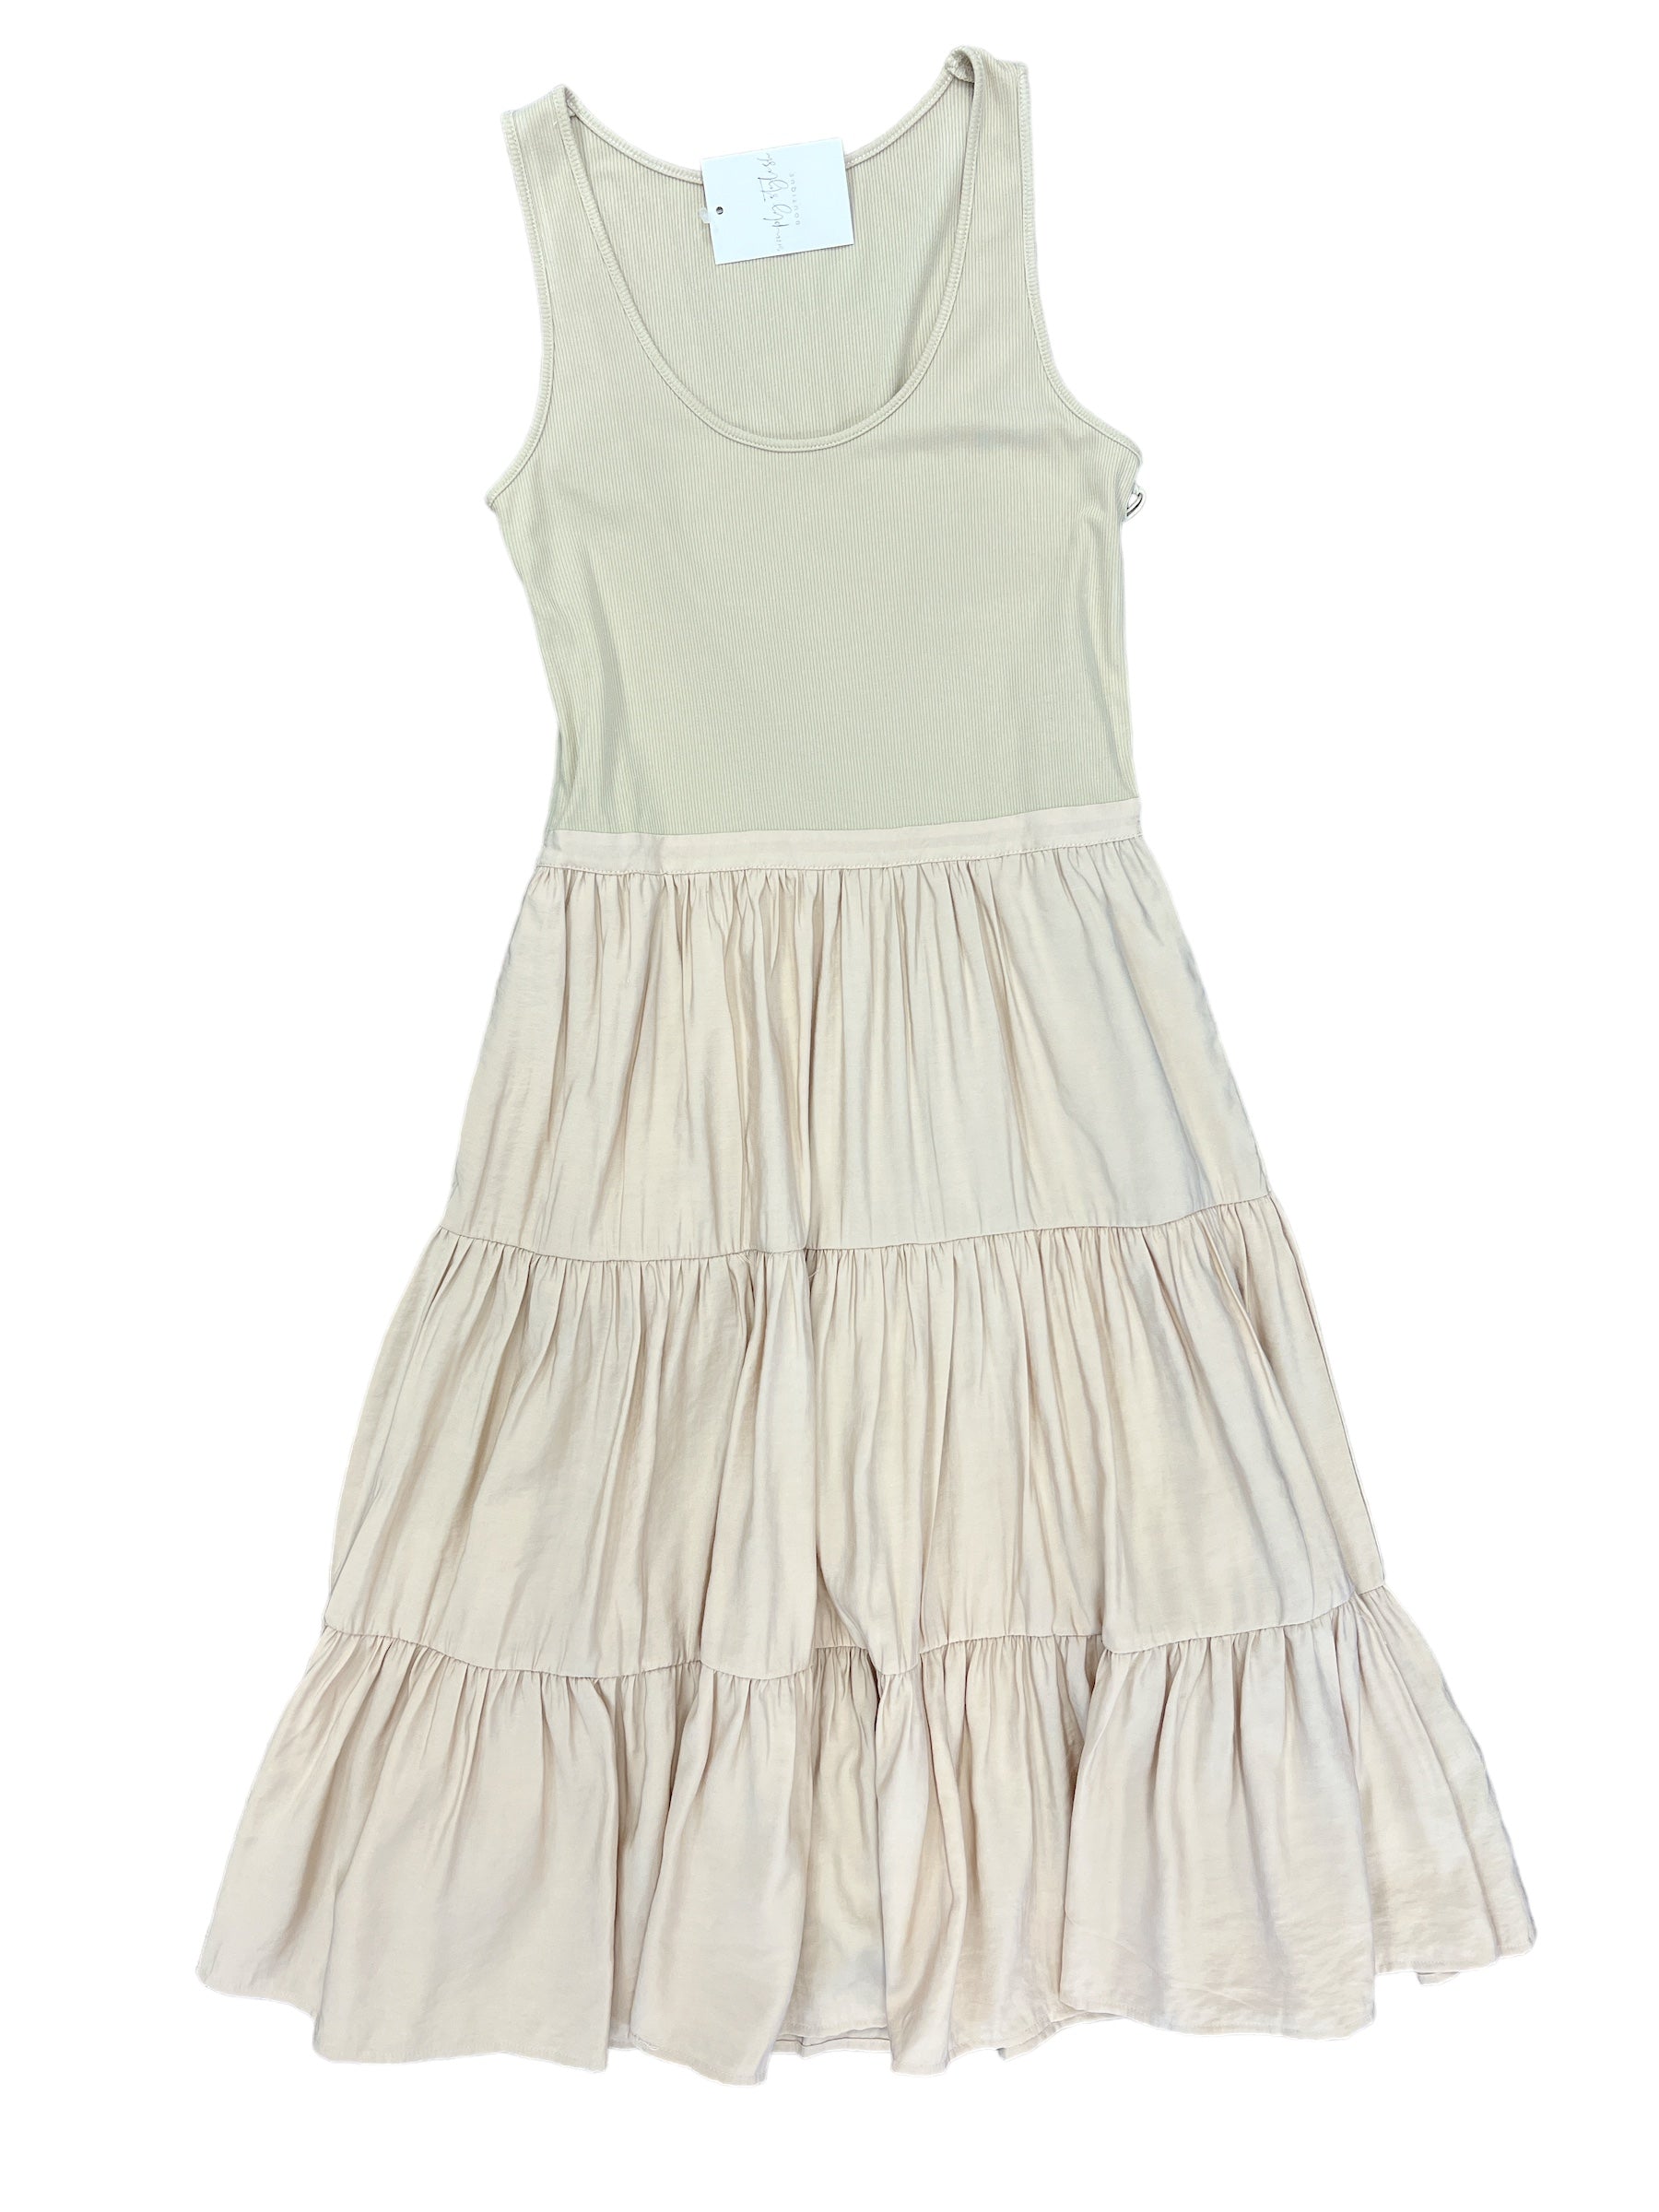 Portia Rib Tank Dress-310 Dresses-Simply Stylish Boutique-Simply Stylish Boutique | Women’s & Kid’s Fashion | Paducah, KY